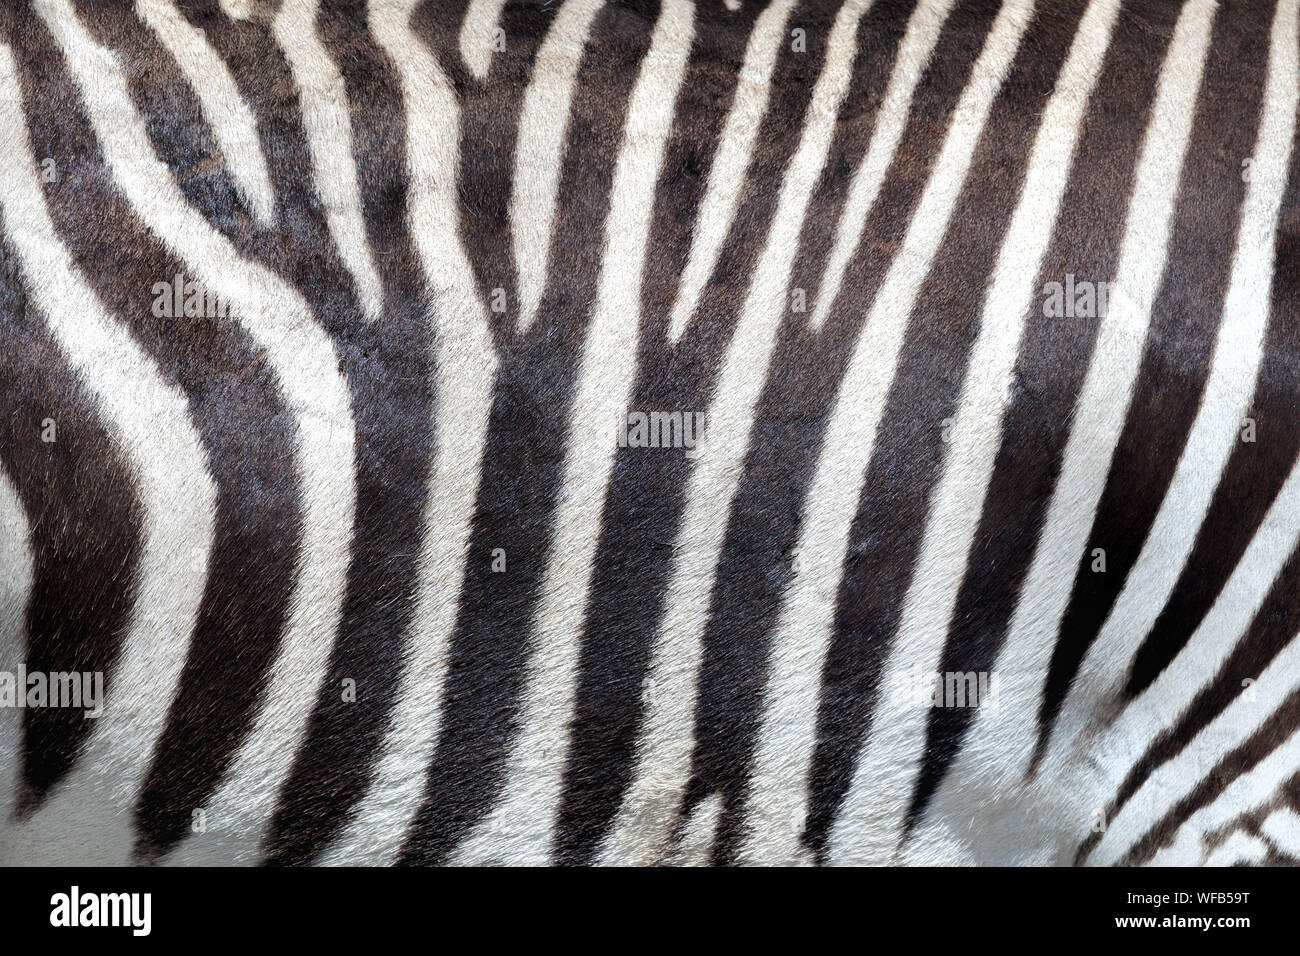 Pelle di zebra immagini e fotografie stock ad alta risoluzione - Alamy